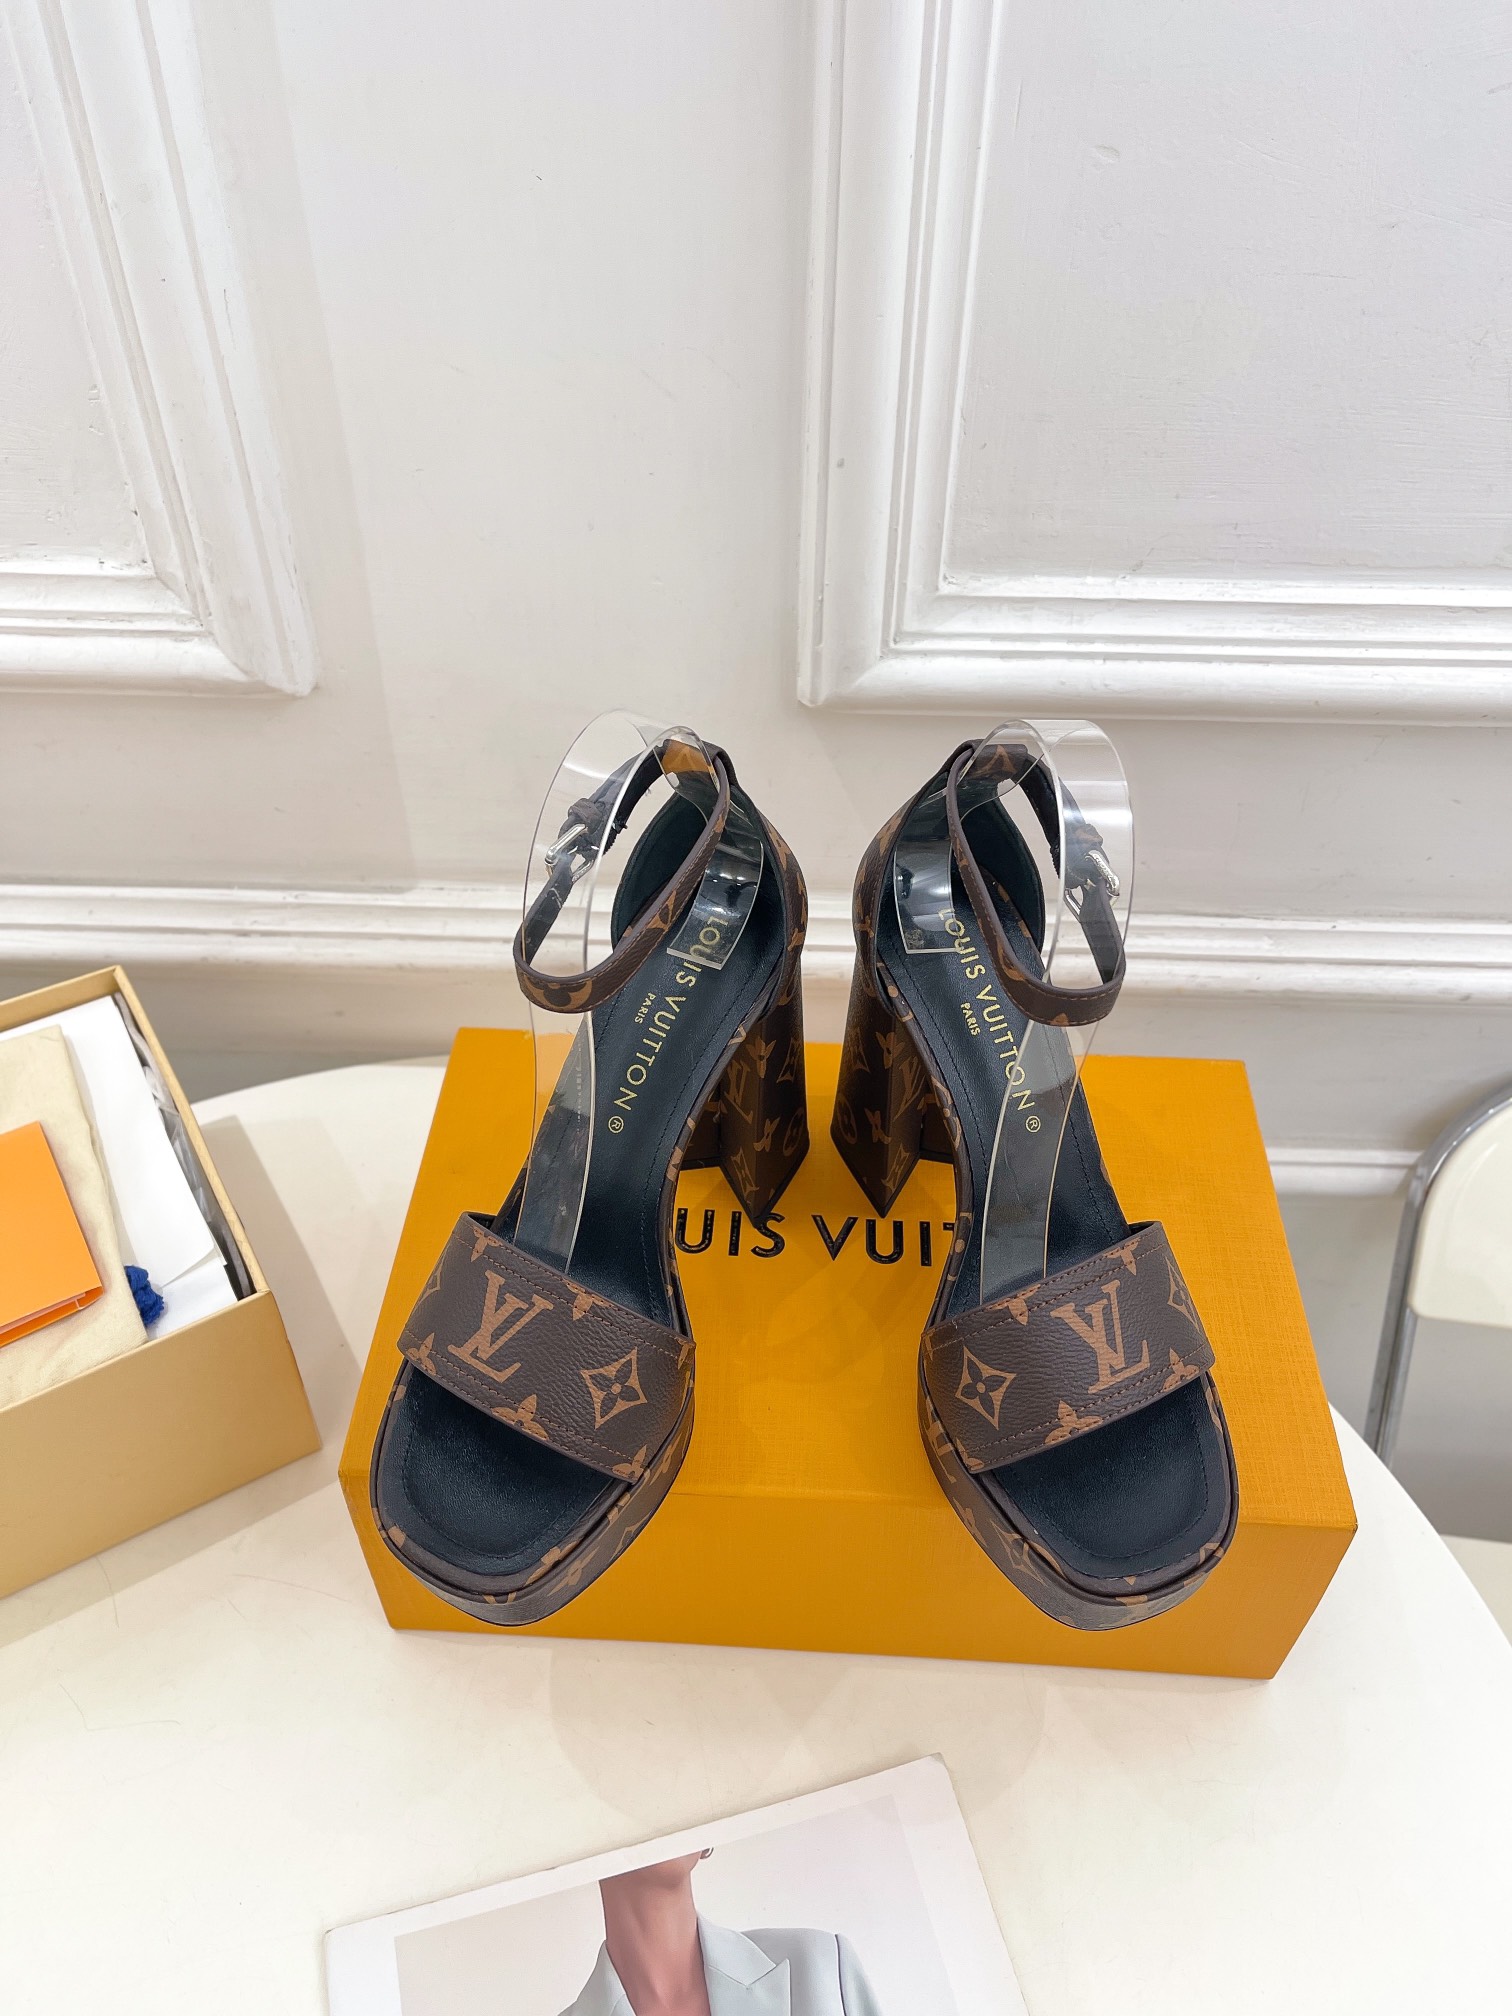 Waar kun je een replica kopen
 Louis Vuitton Schoenen Hoge Hakken Sandalen Denim Echt leer Schapenvacht Lente/Zomercollectie Vintage